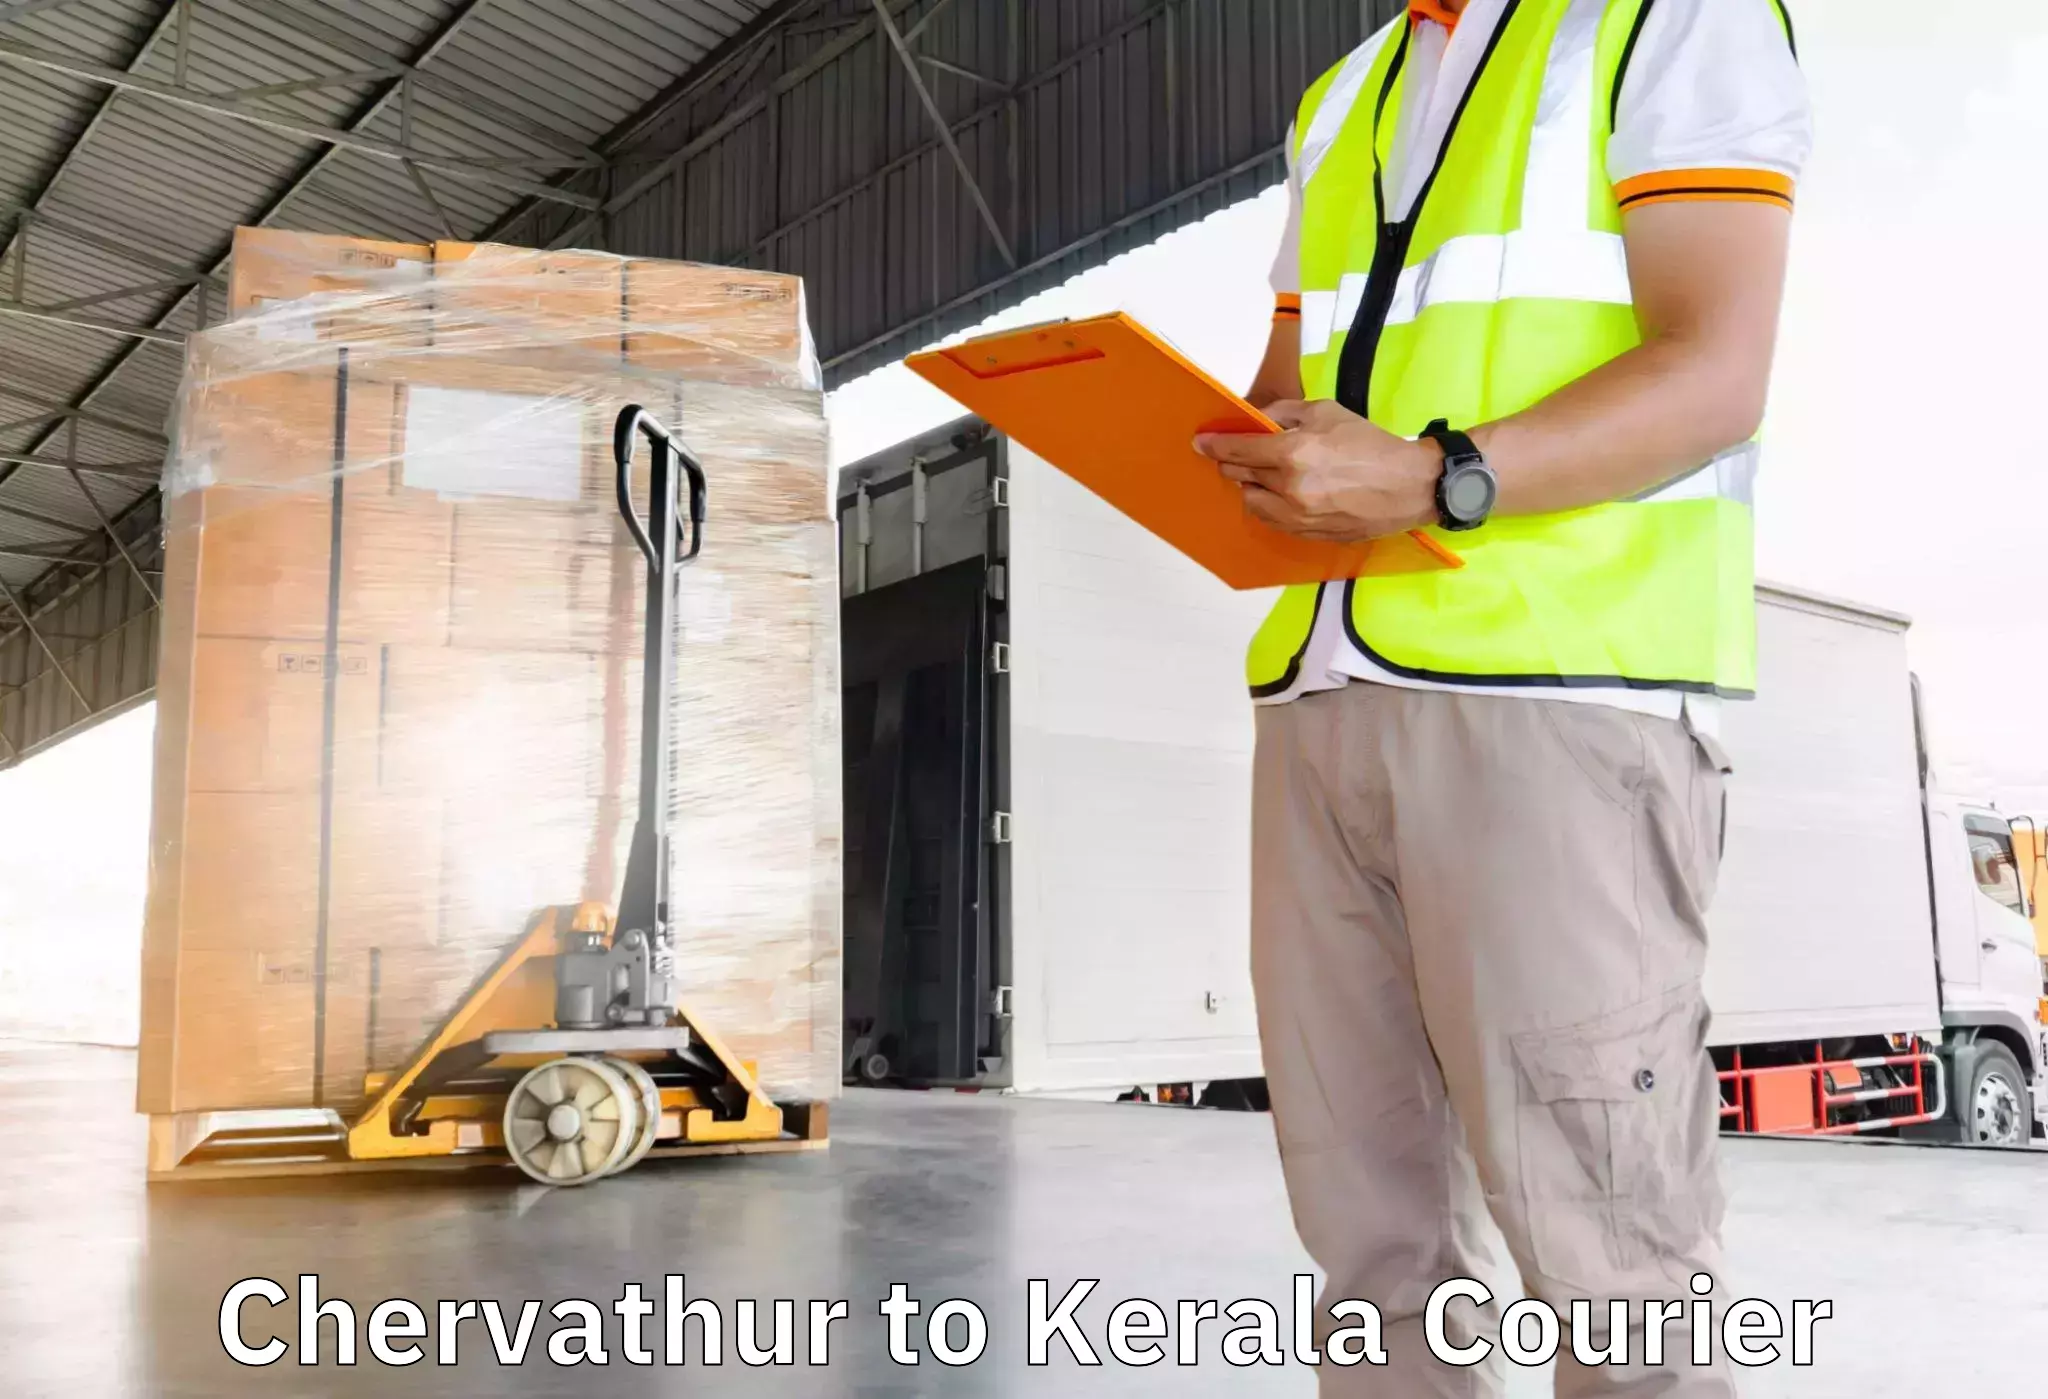 Moving and packing experts Chervathur to Mundakayam